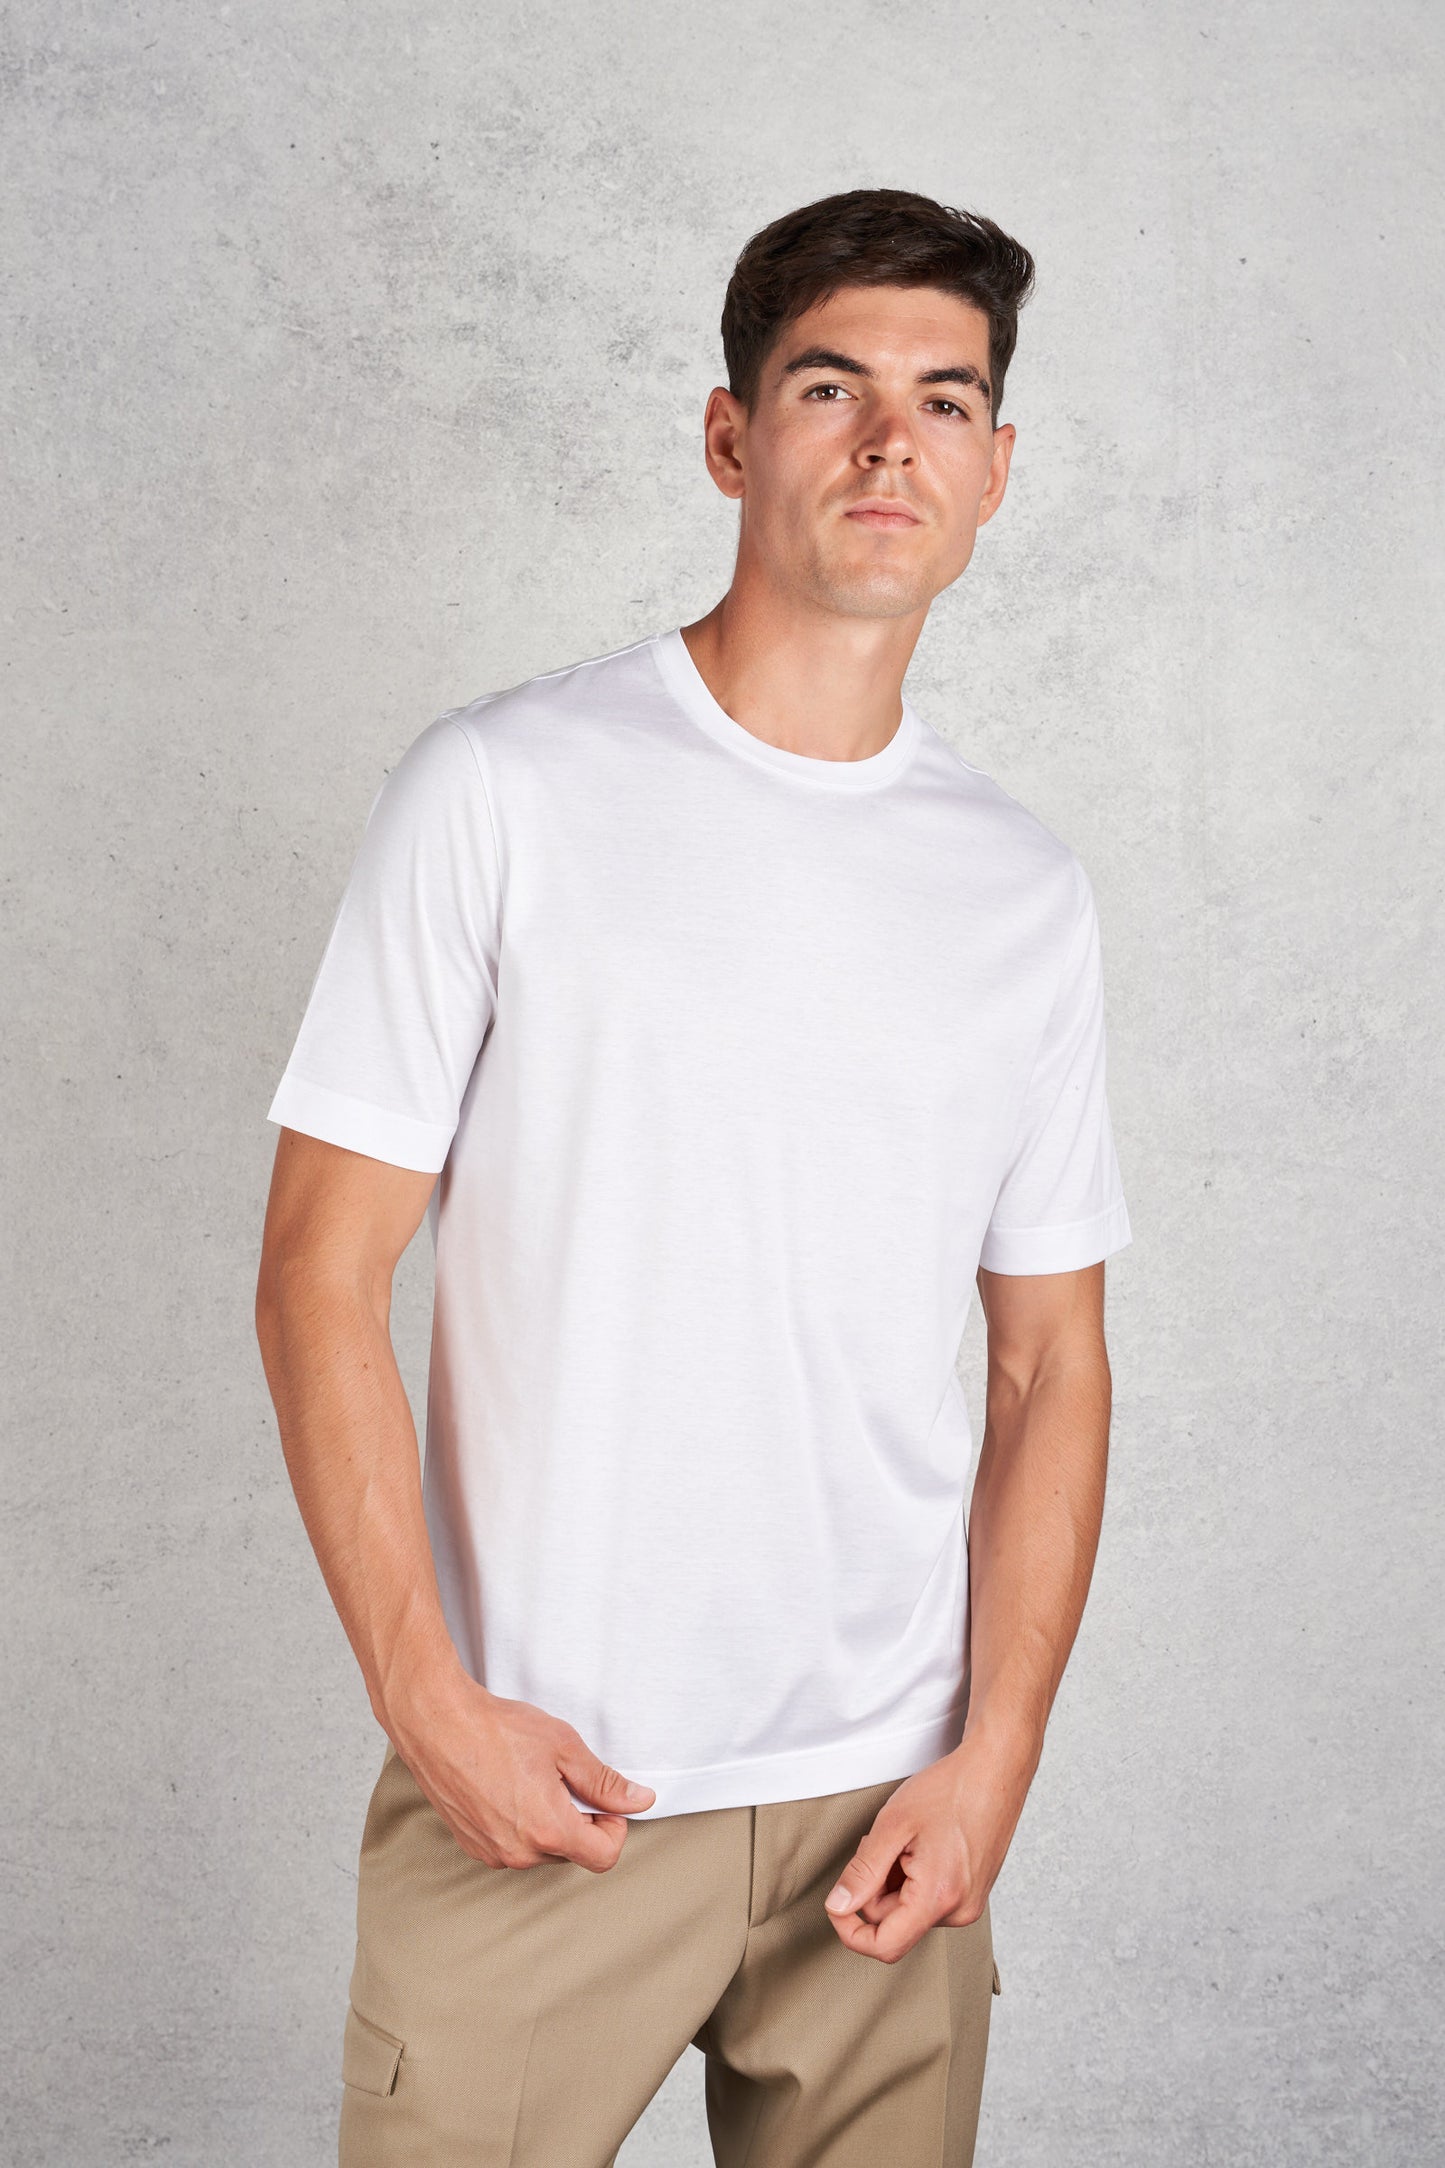  Filippo De Laurentiis Men's White Short Sleeve T-shirt Bianco Uomo - 3